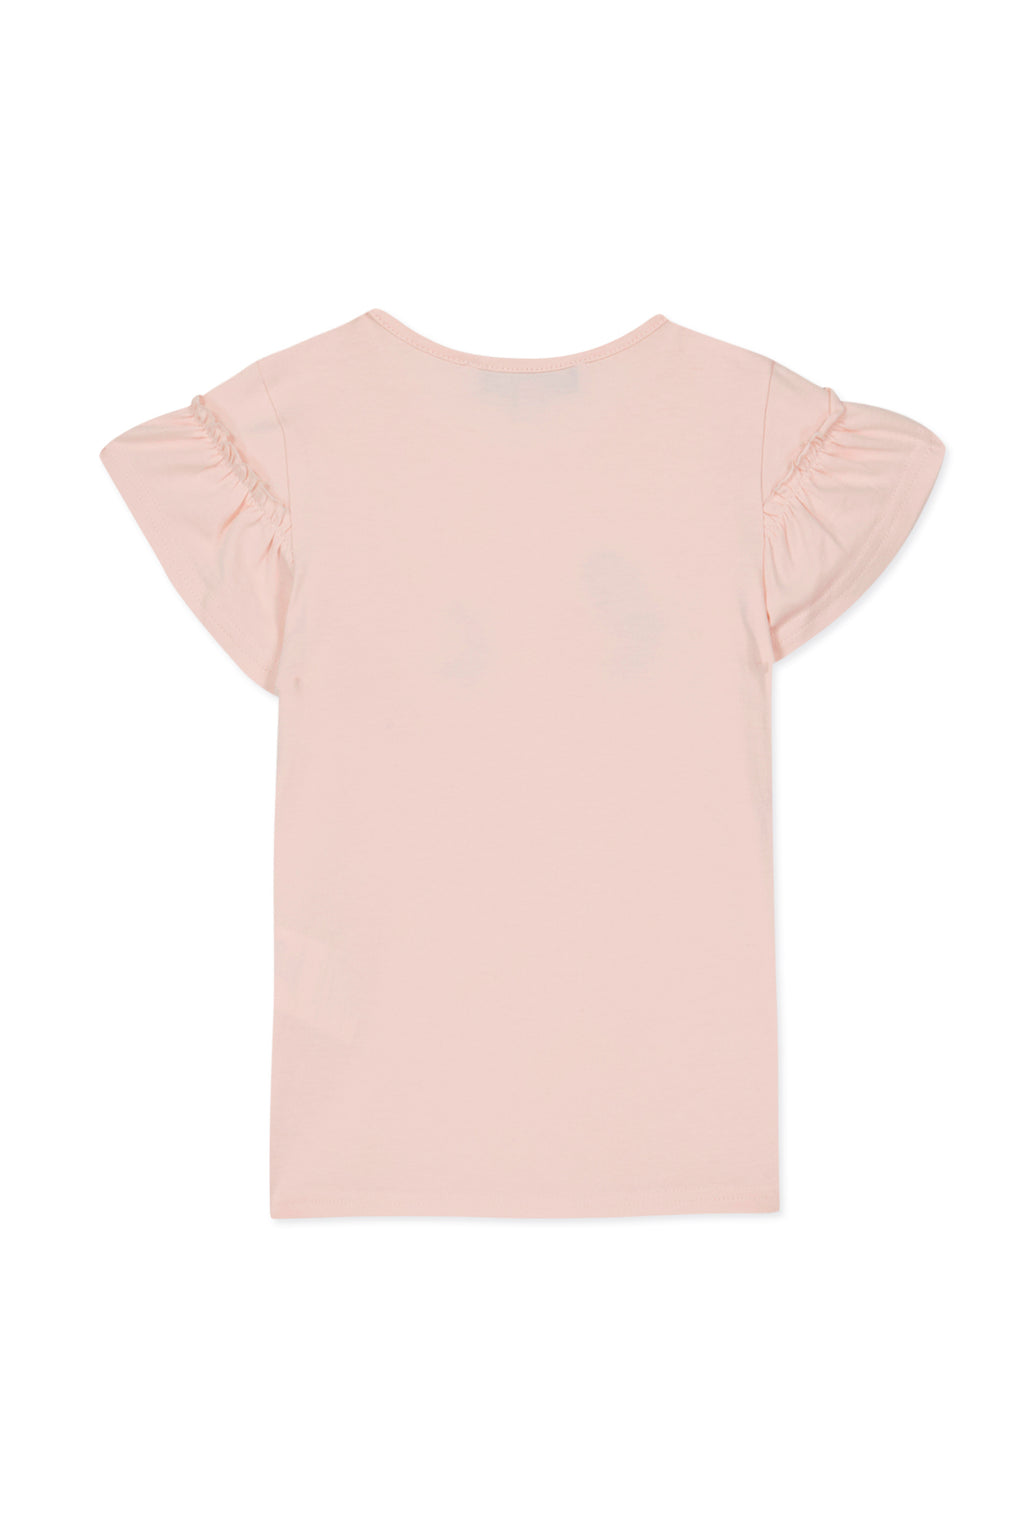 T-shirt - Rose pâle illustration glaces